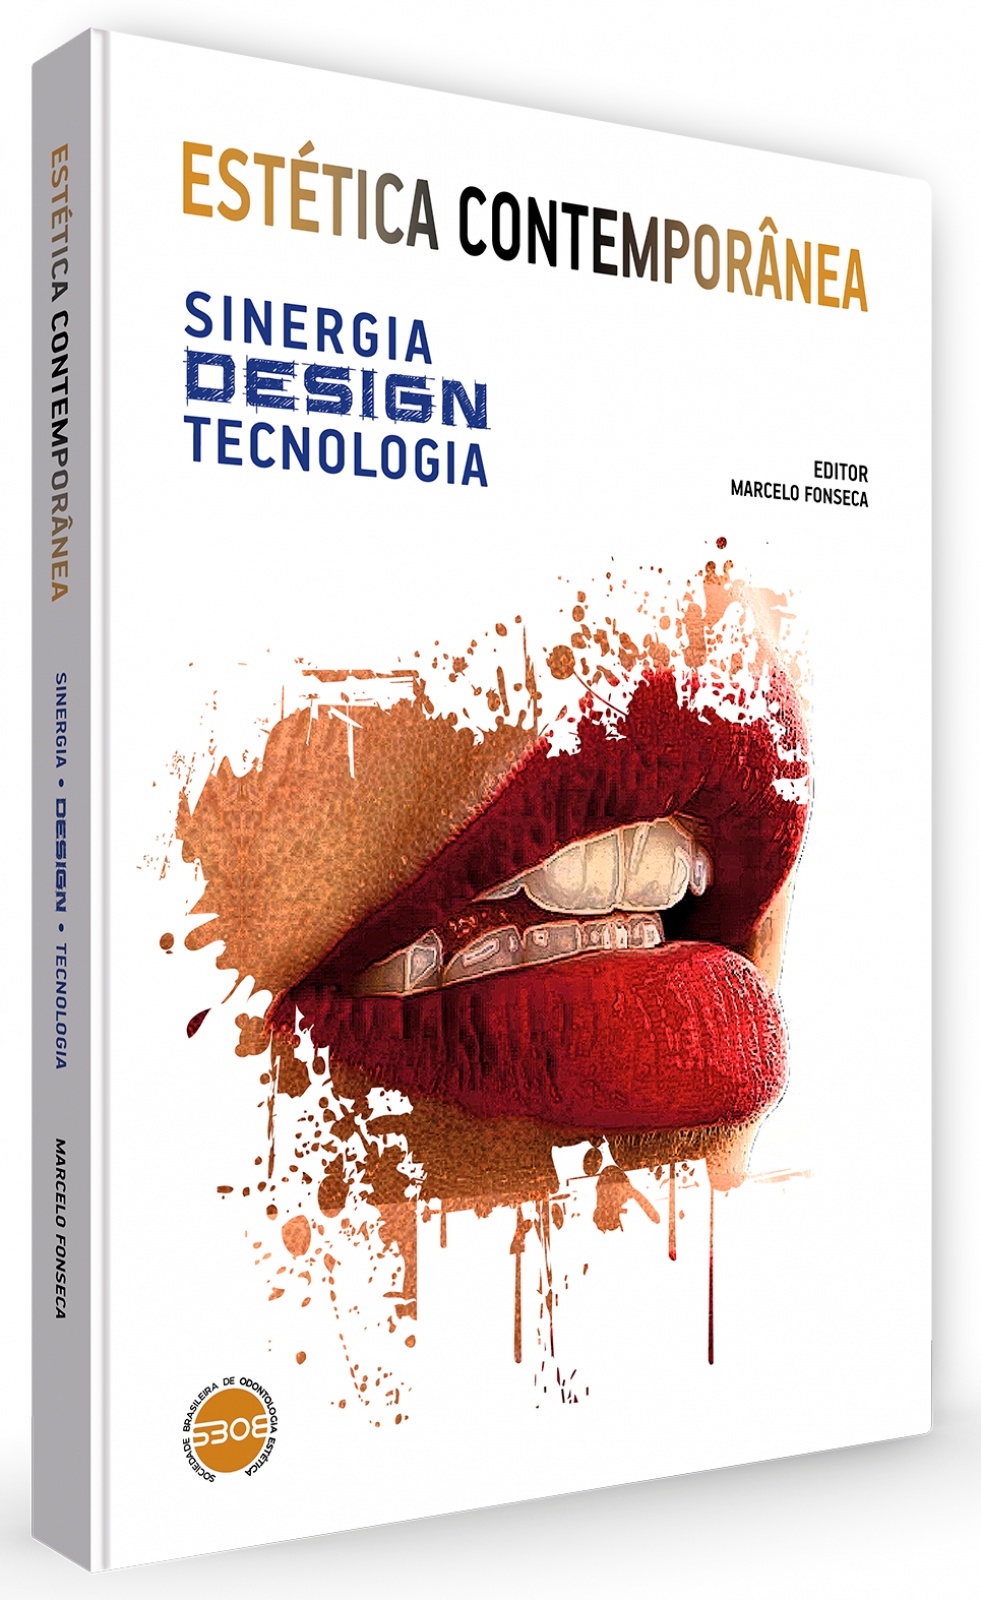 Estética Contemporânea - Sinergia Design Tecnologia